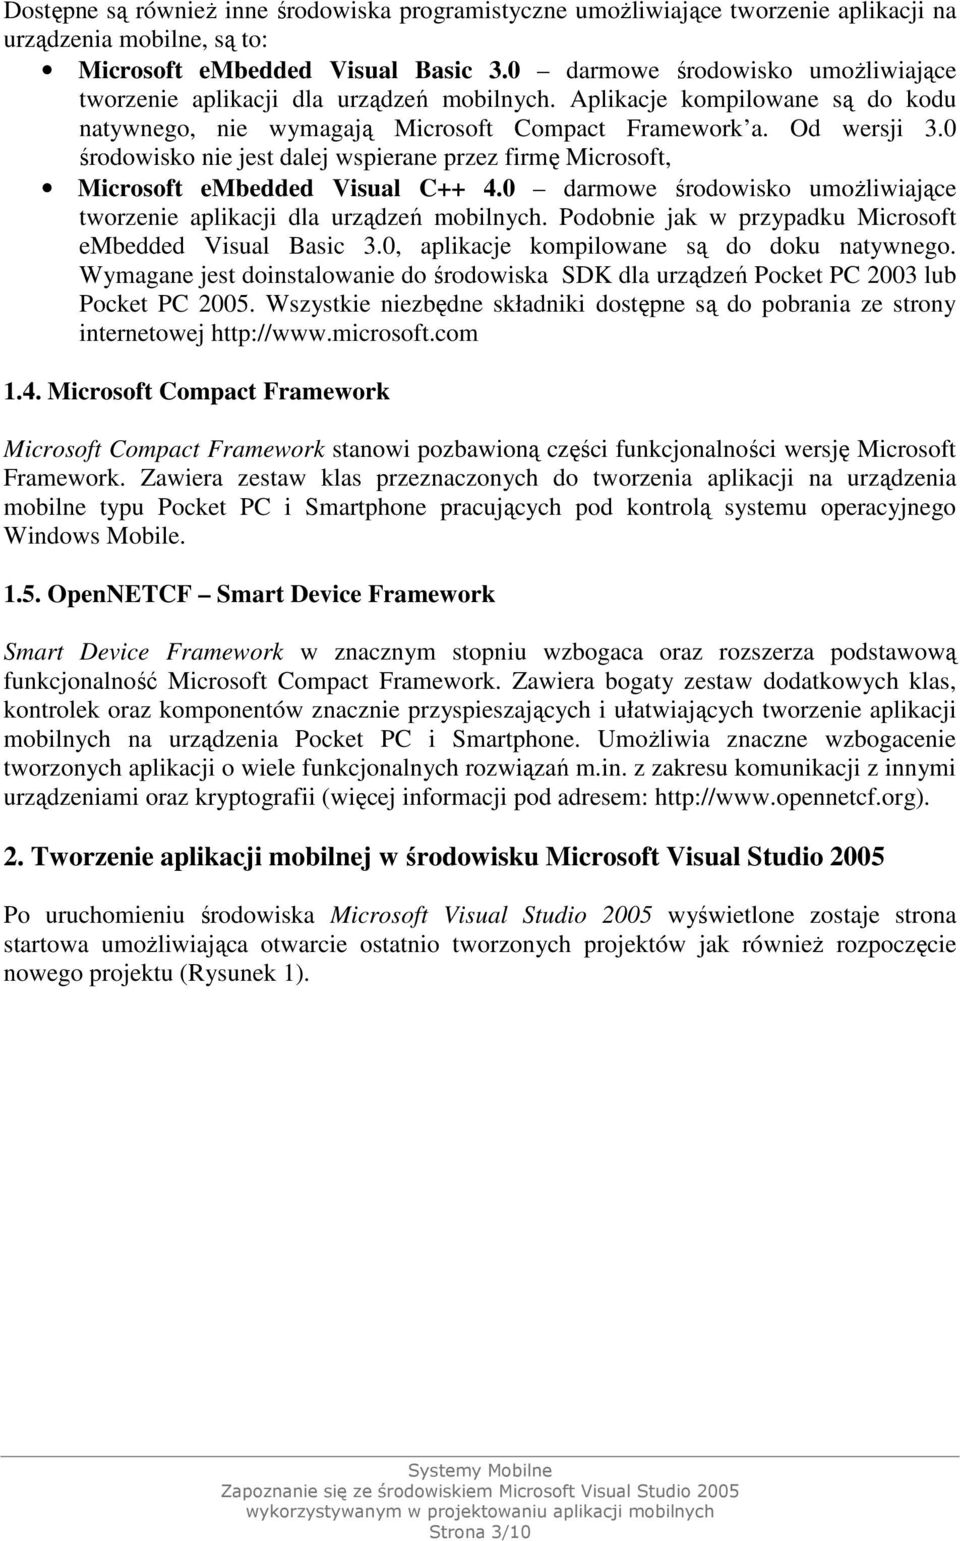 0 środowisko nie jest dalej wspierane przez firmę Microsoft, Microsoft embedded Visual C++ 4.0 darmowe środowisko umoŝliwiające tworzenie aplikacji dla urządzeń mobilnych.